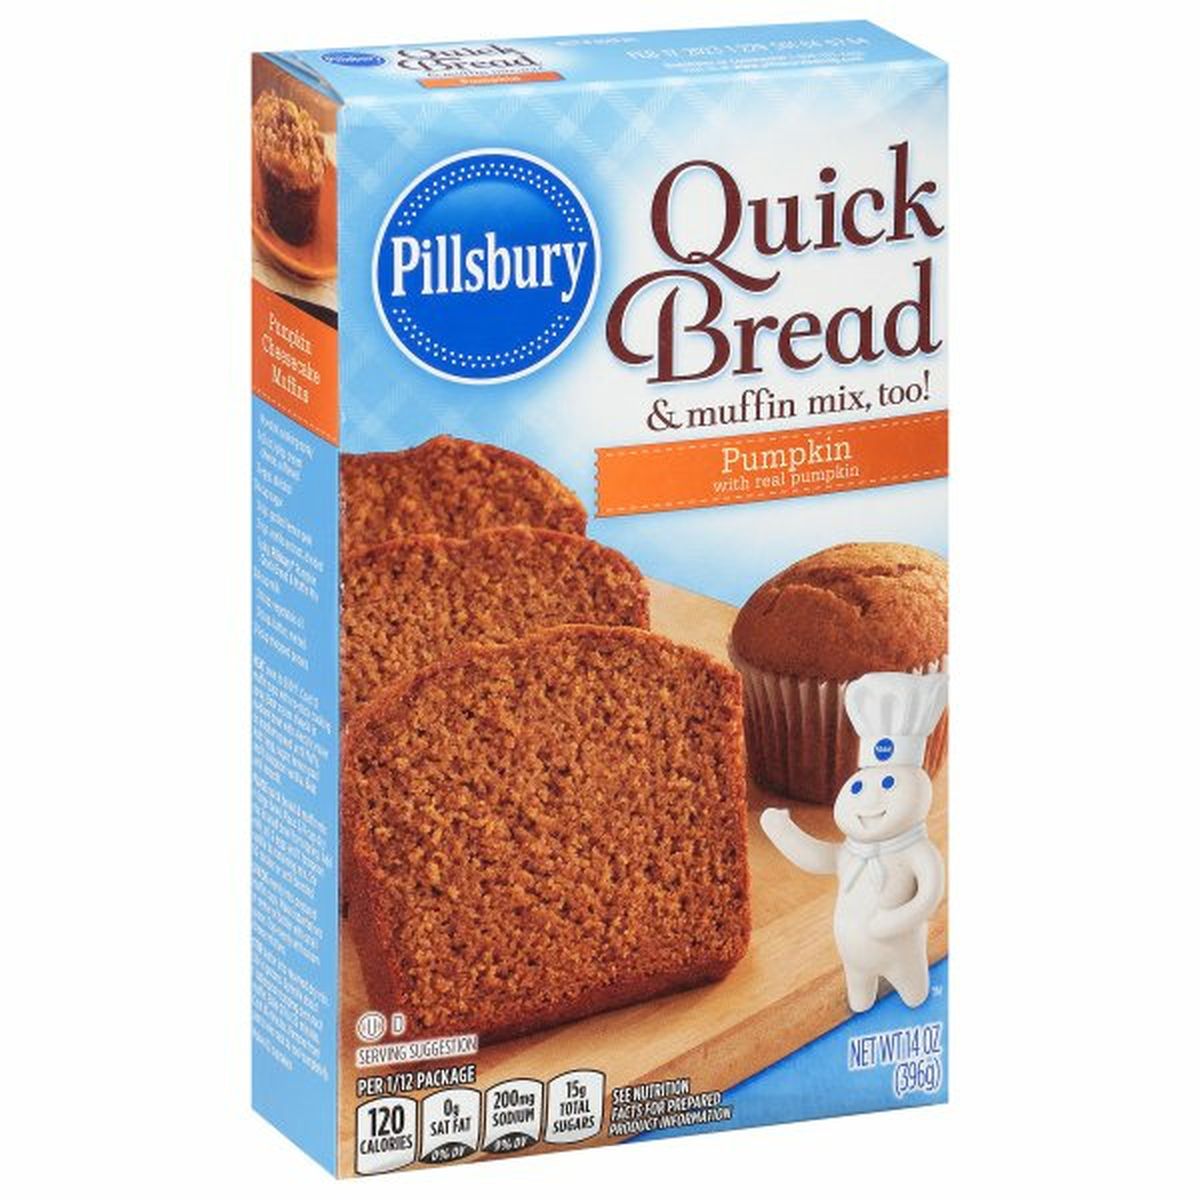 Calories in Pillsbury Quick Bread & Muffin Mix, Pumpkin